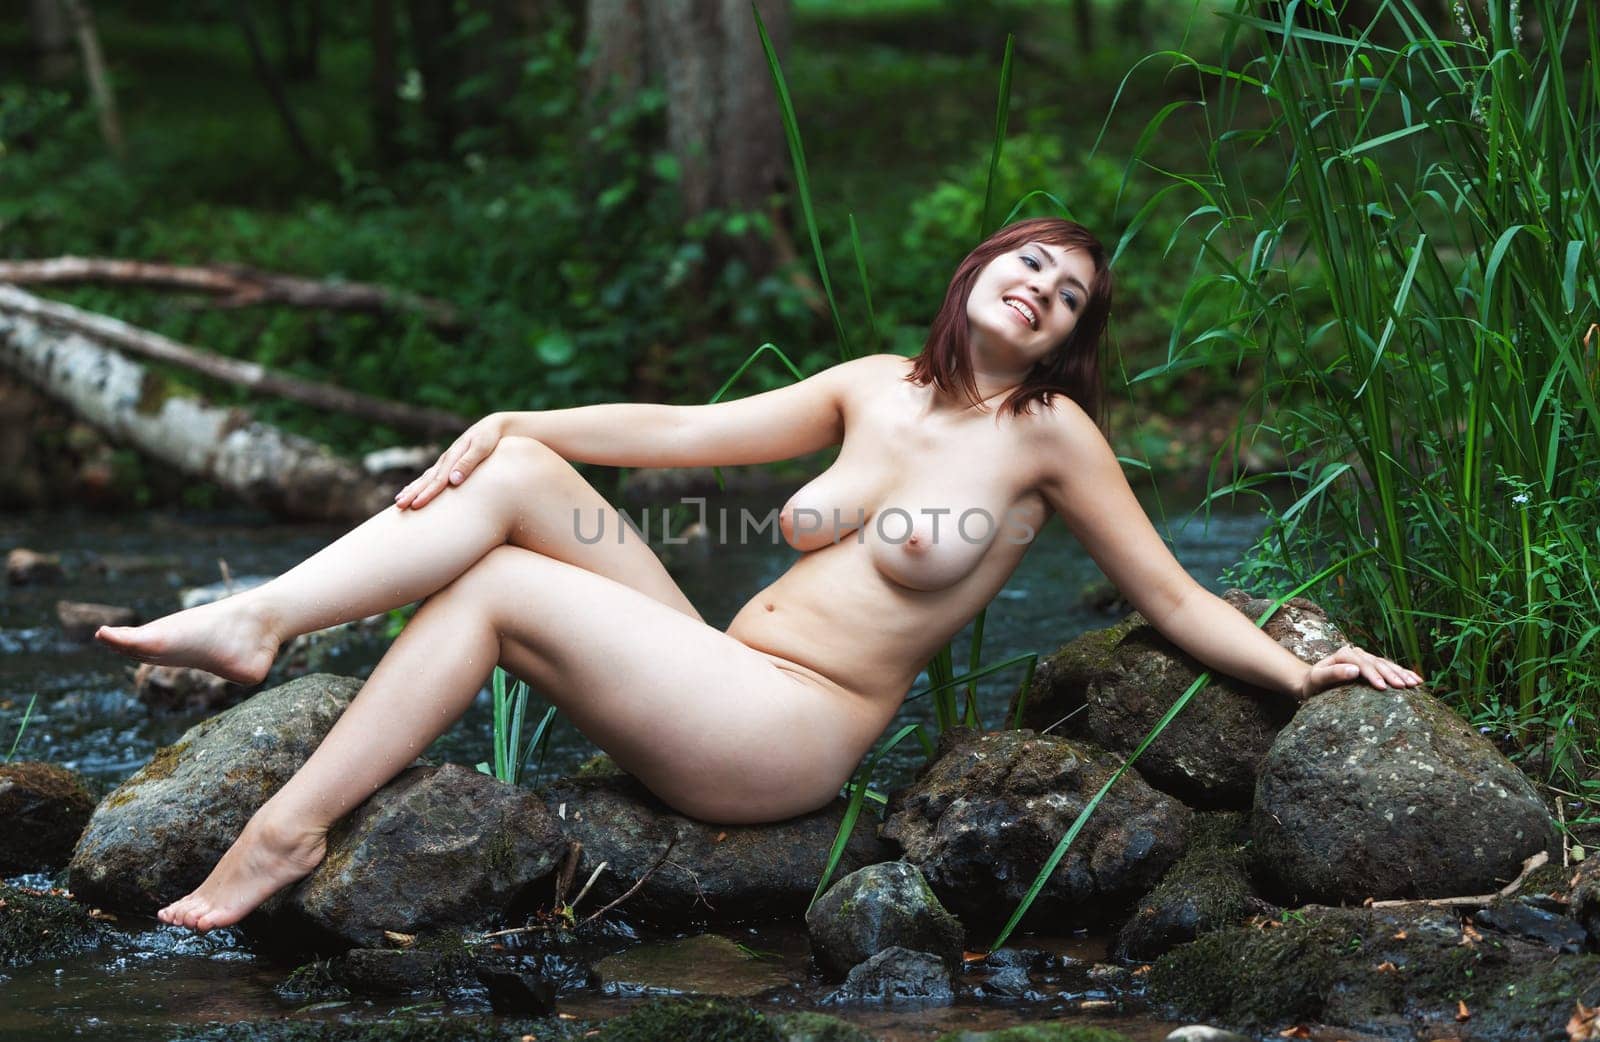 Naked woman among rocks near forest stream enjoying nature  by palinchak